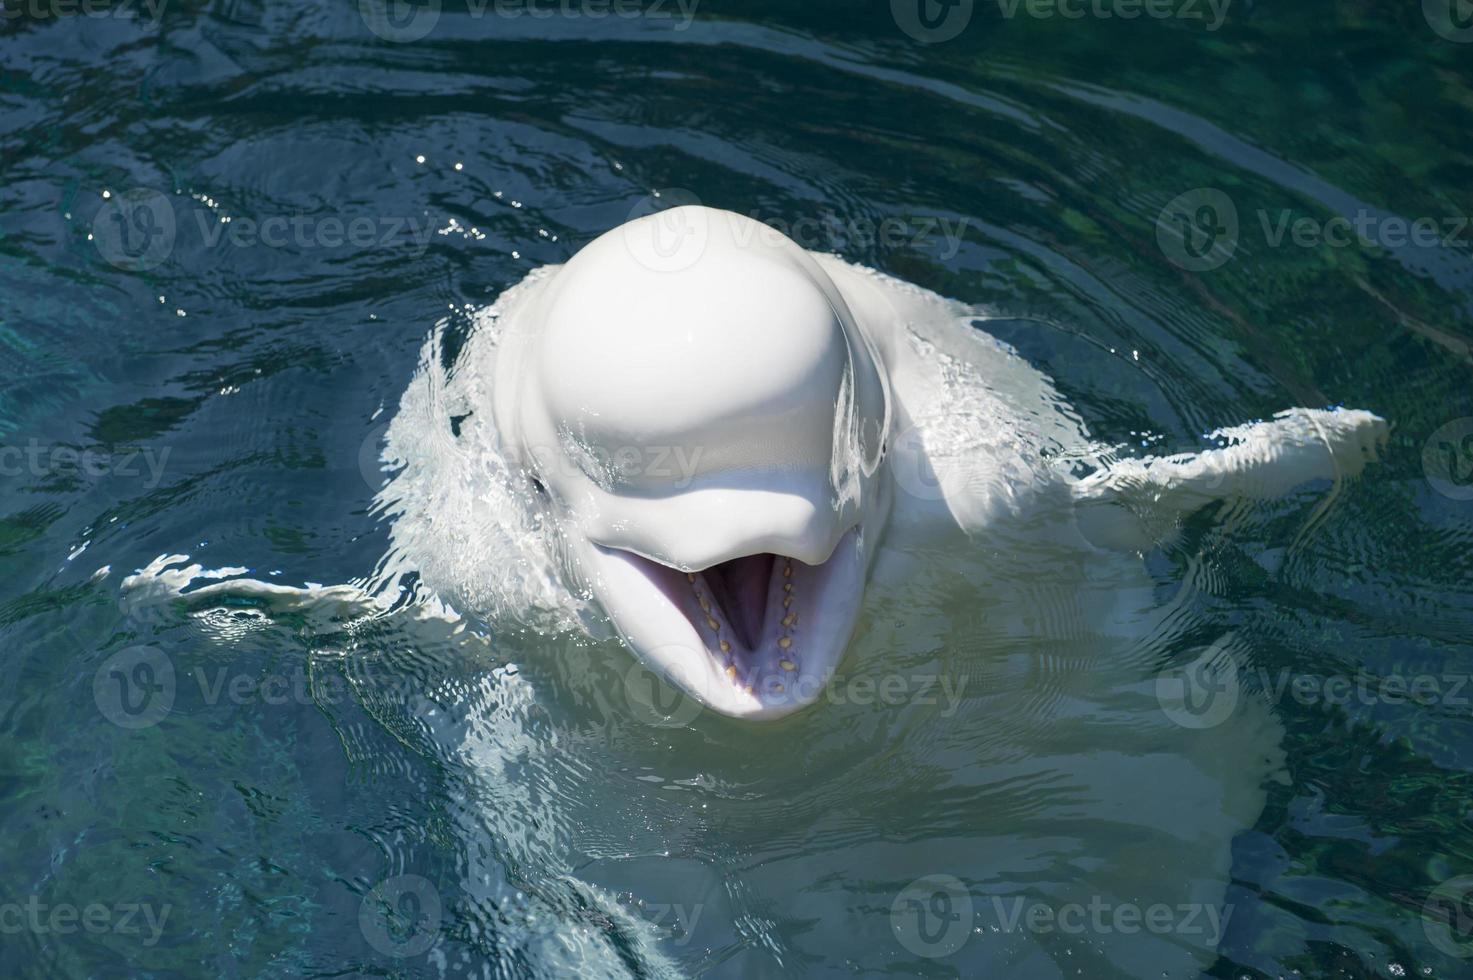 un delfín blanco aislado beluga mirándote en el mar azul profundo foto